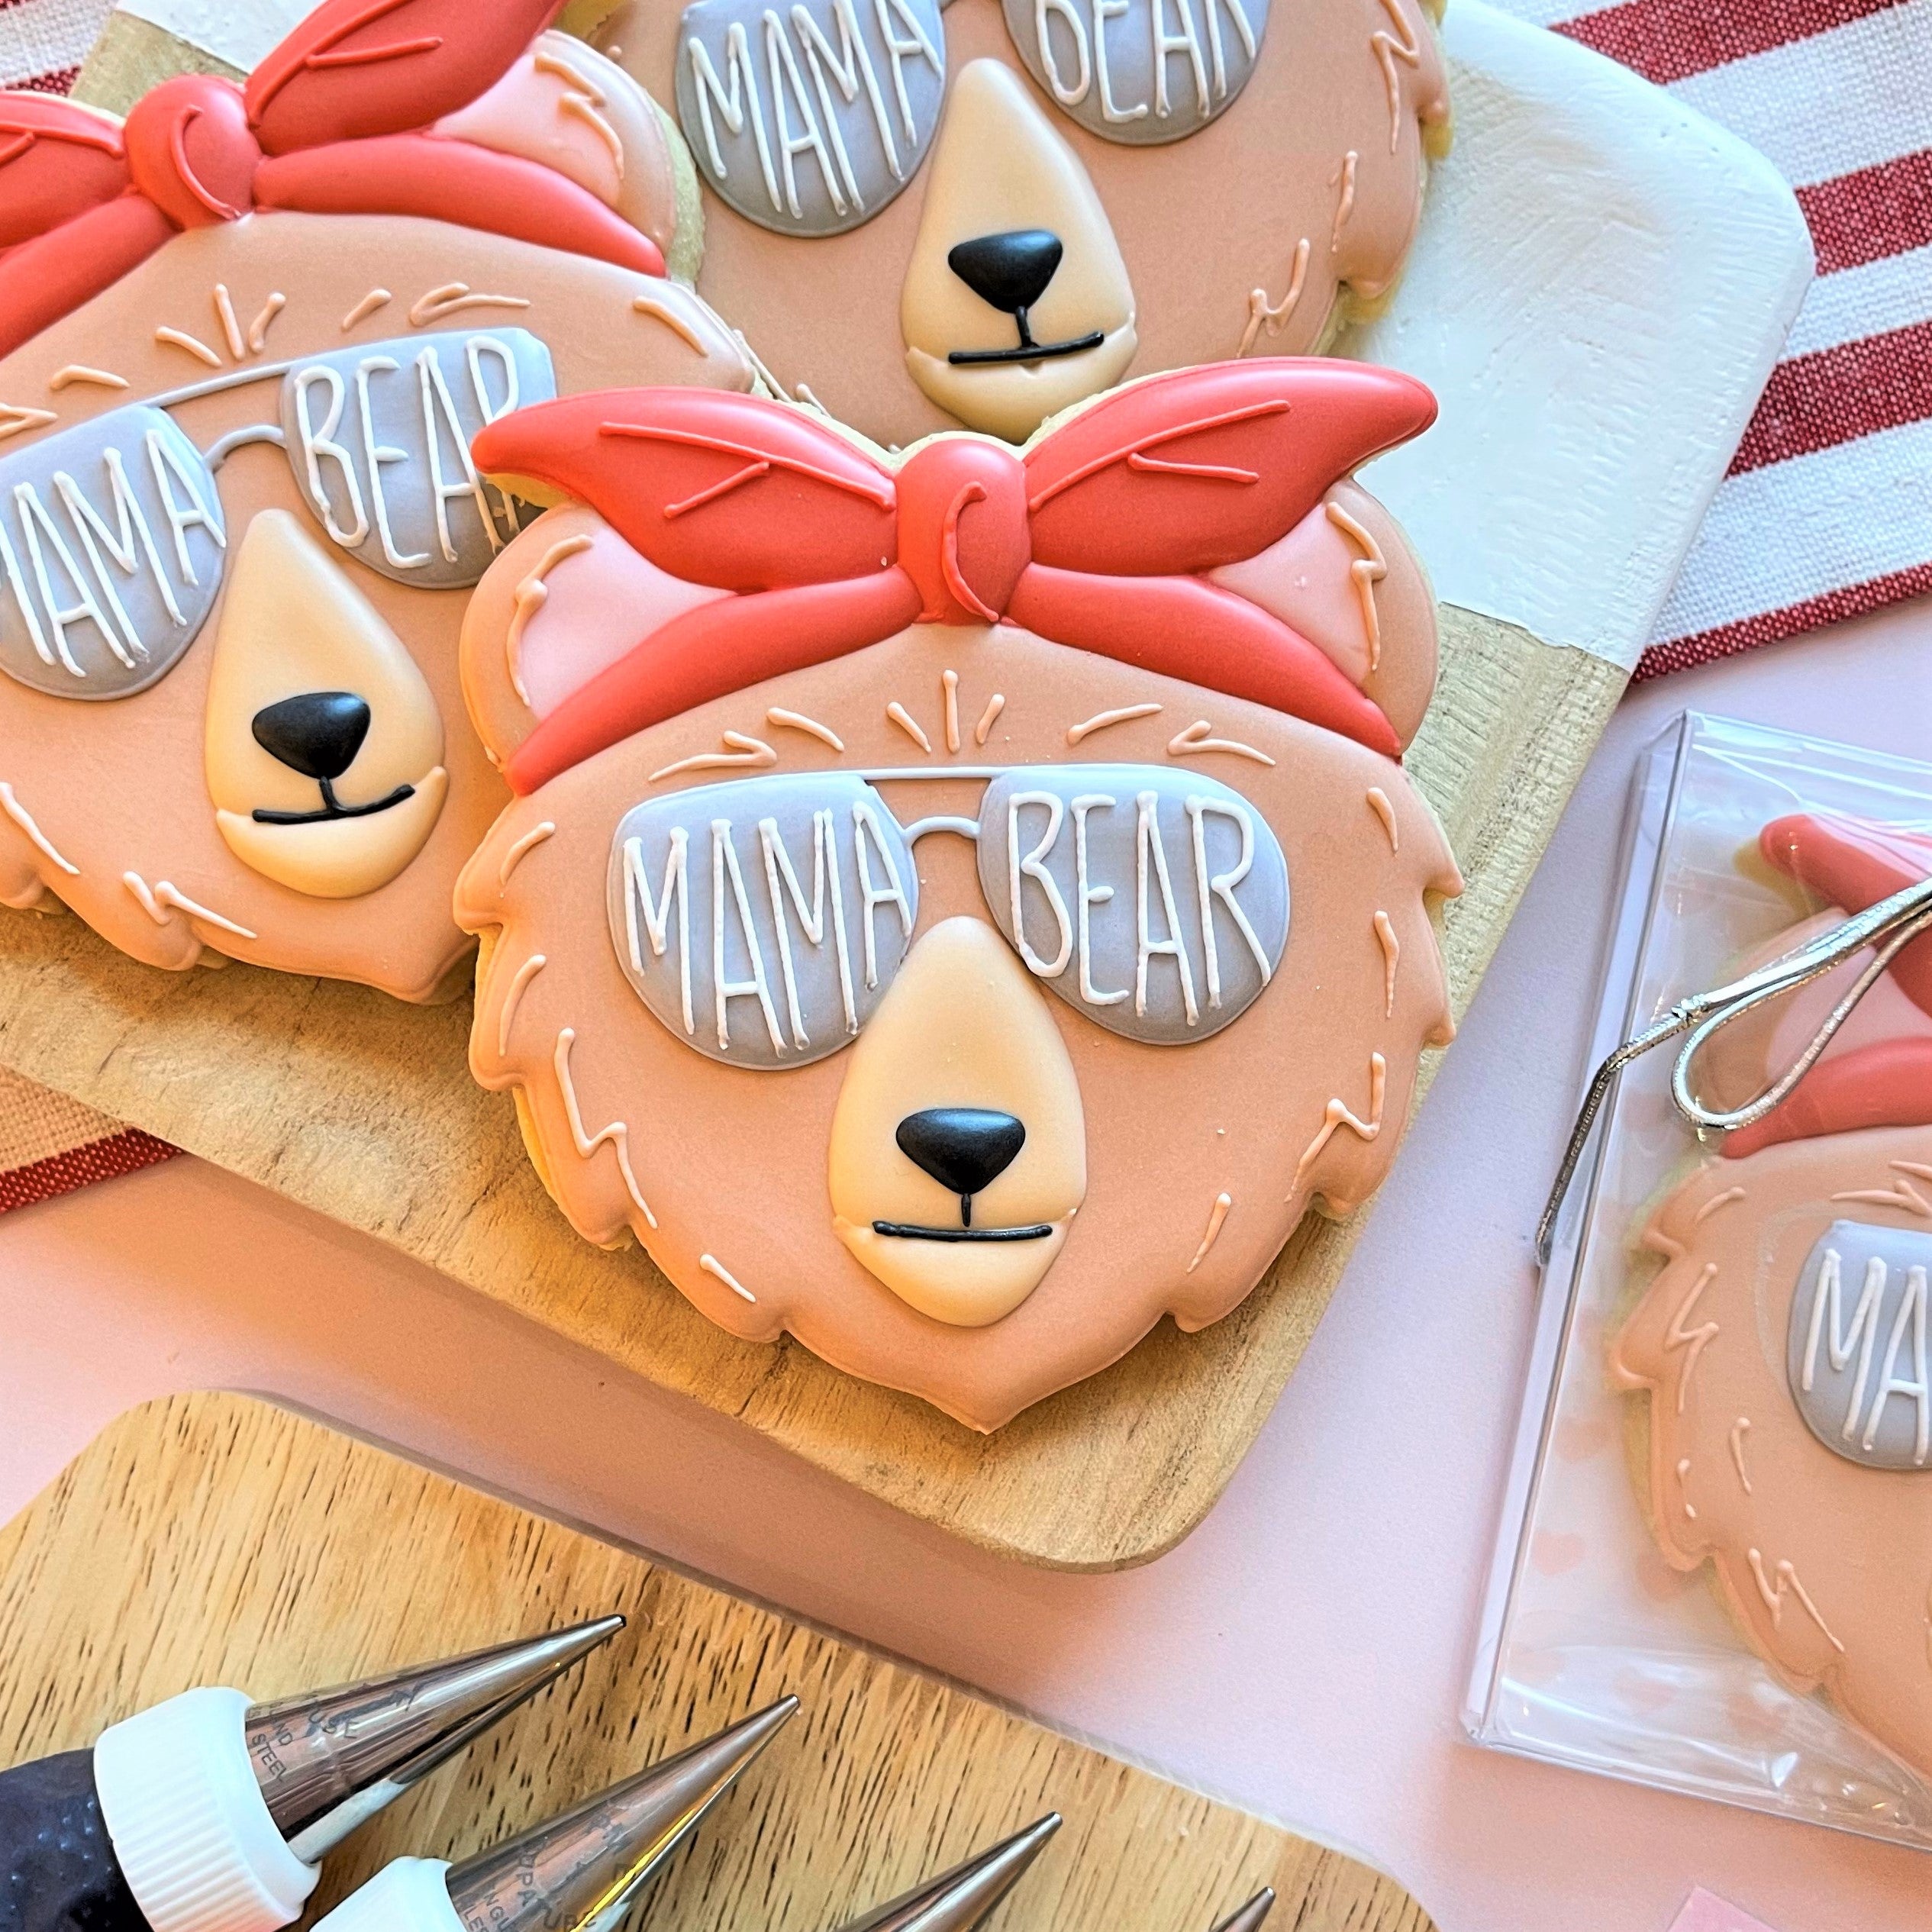 Mama Bear Head Cookie Cutter – Cut It Out Cutters